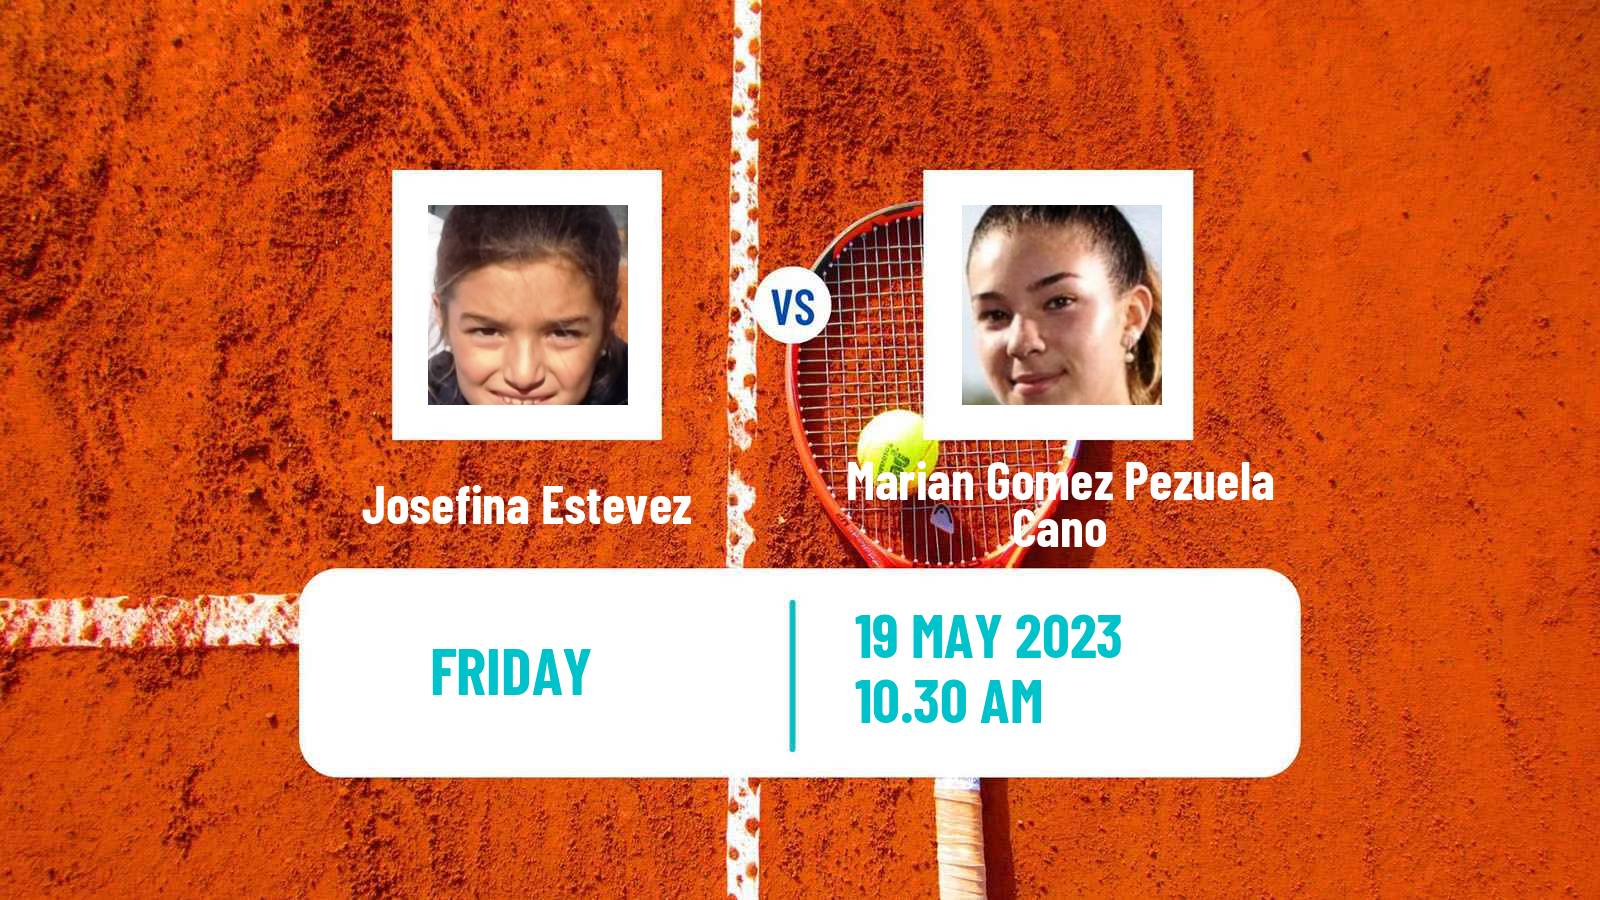 Tennis ITF W15 Curitiba Women Josefina Estevez - Marian Gomez Pezuela Cano